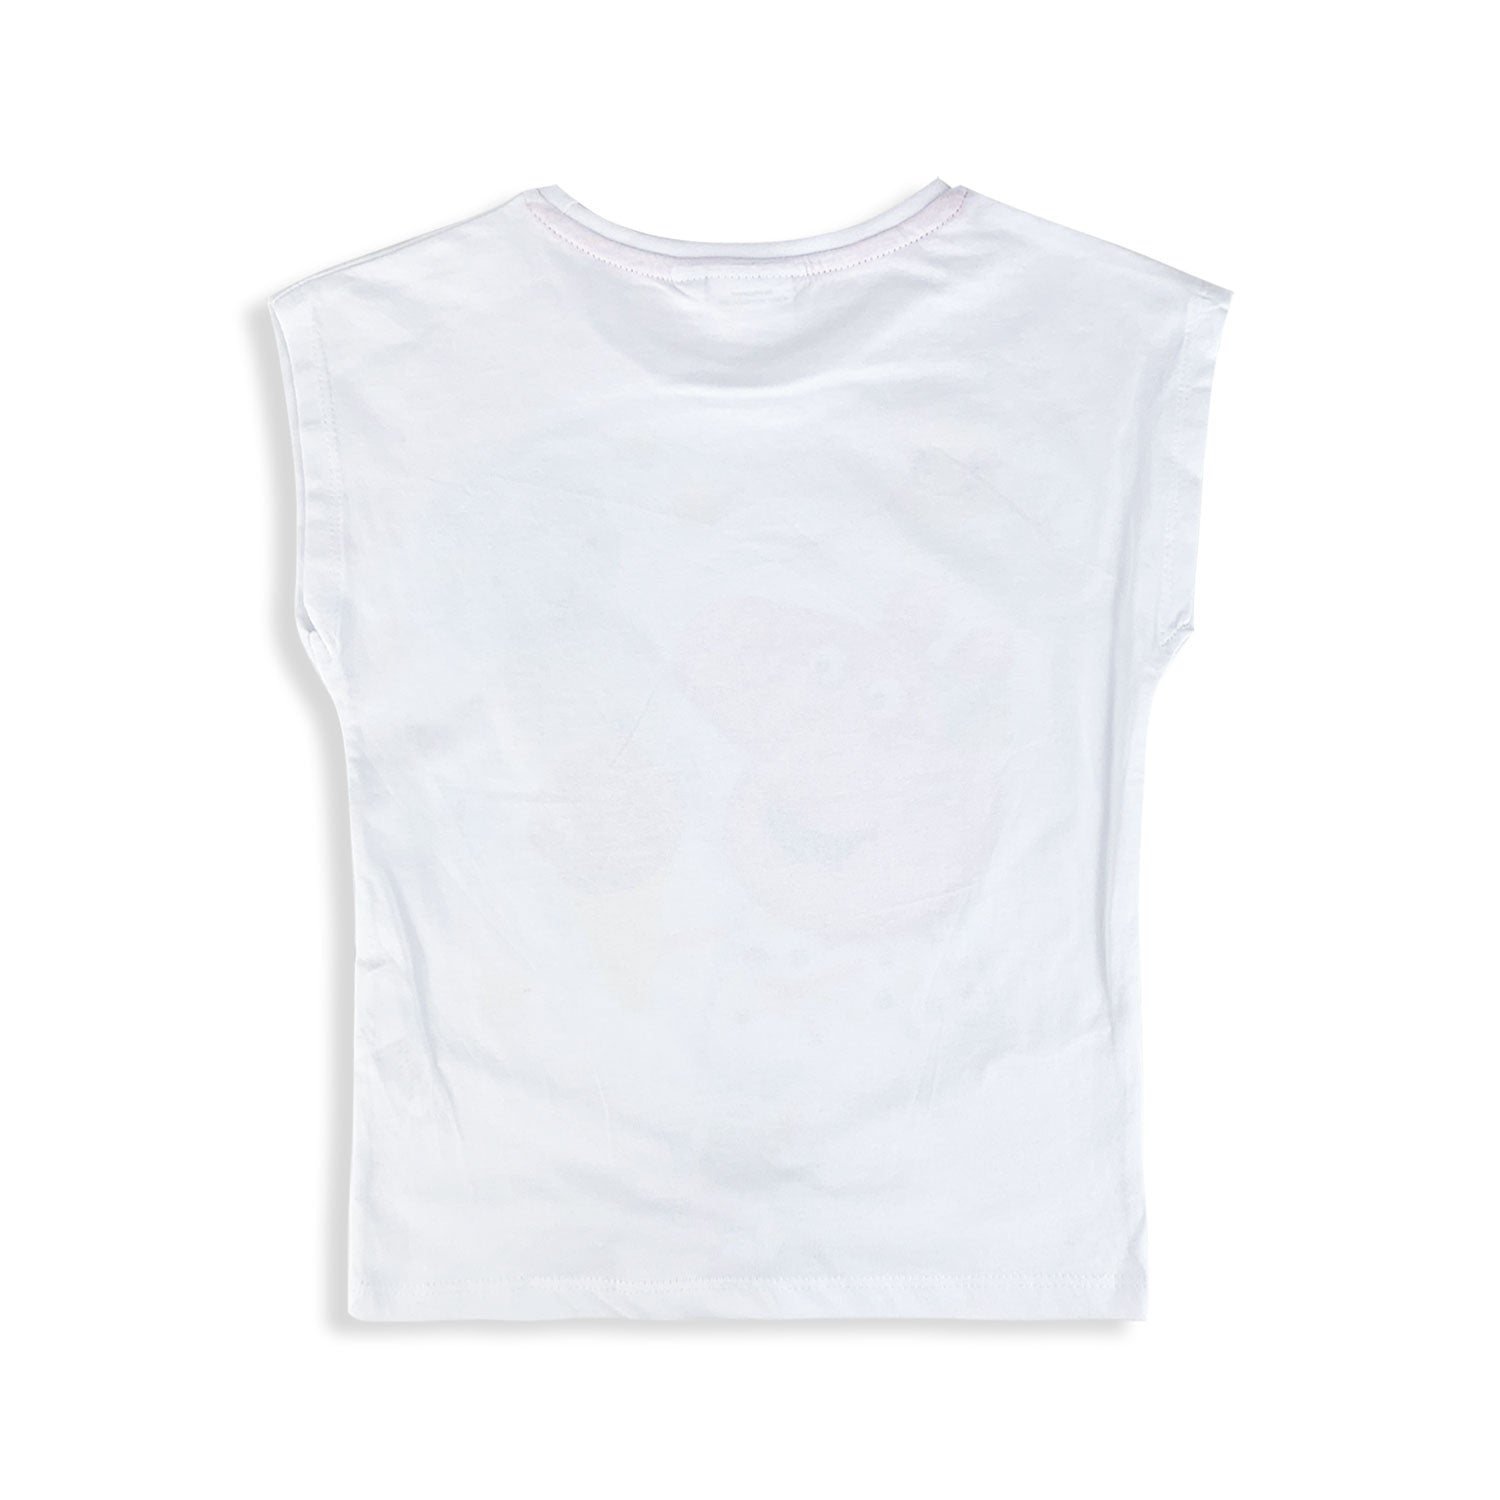 T-shirt Peppa Pig maglietta maniche corte maglia bambina in cotone 5428